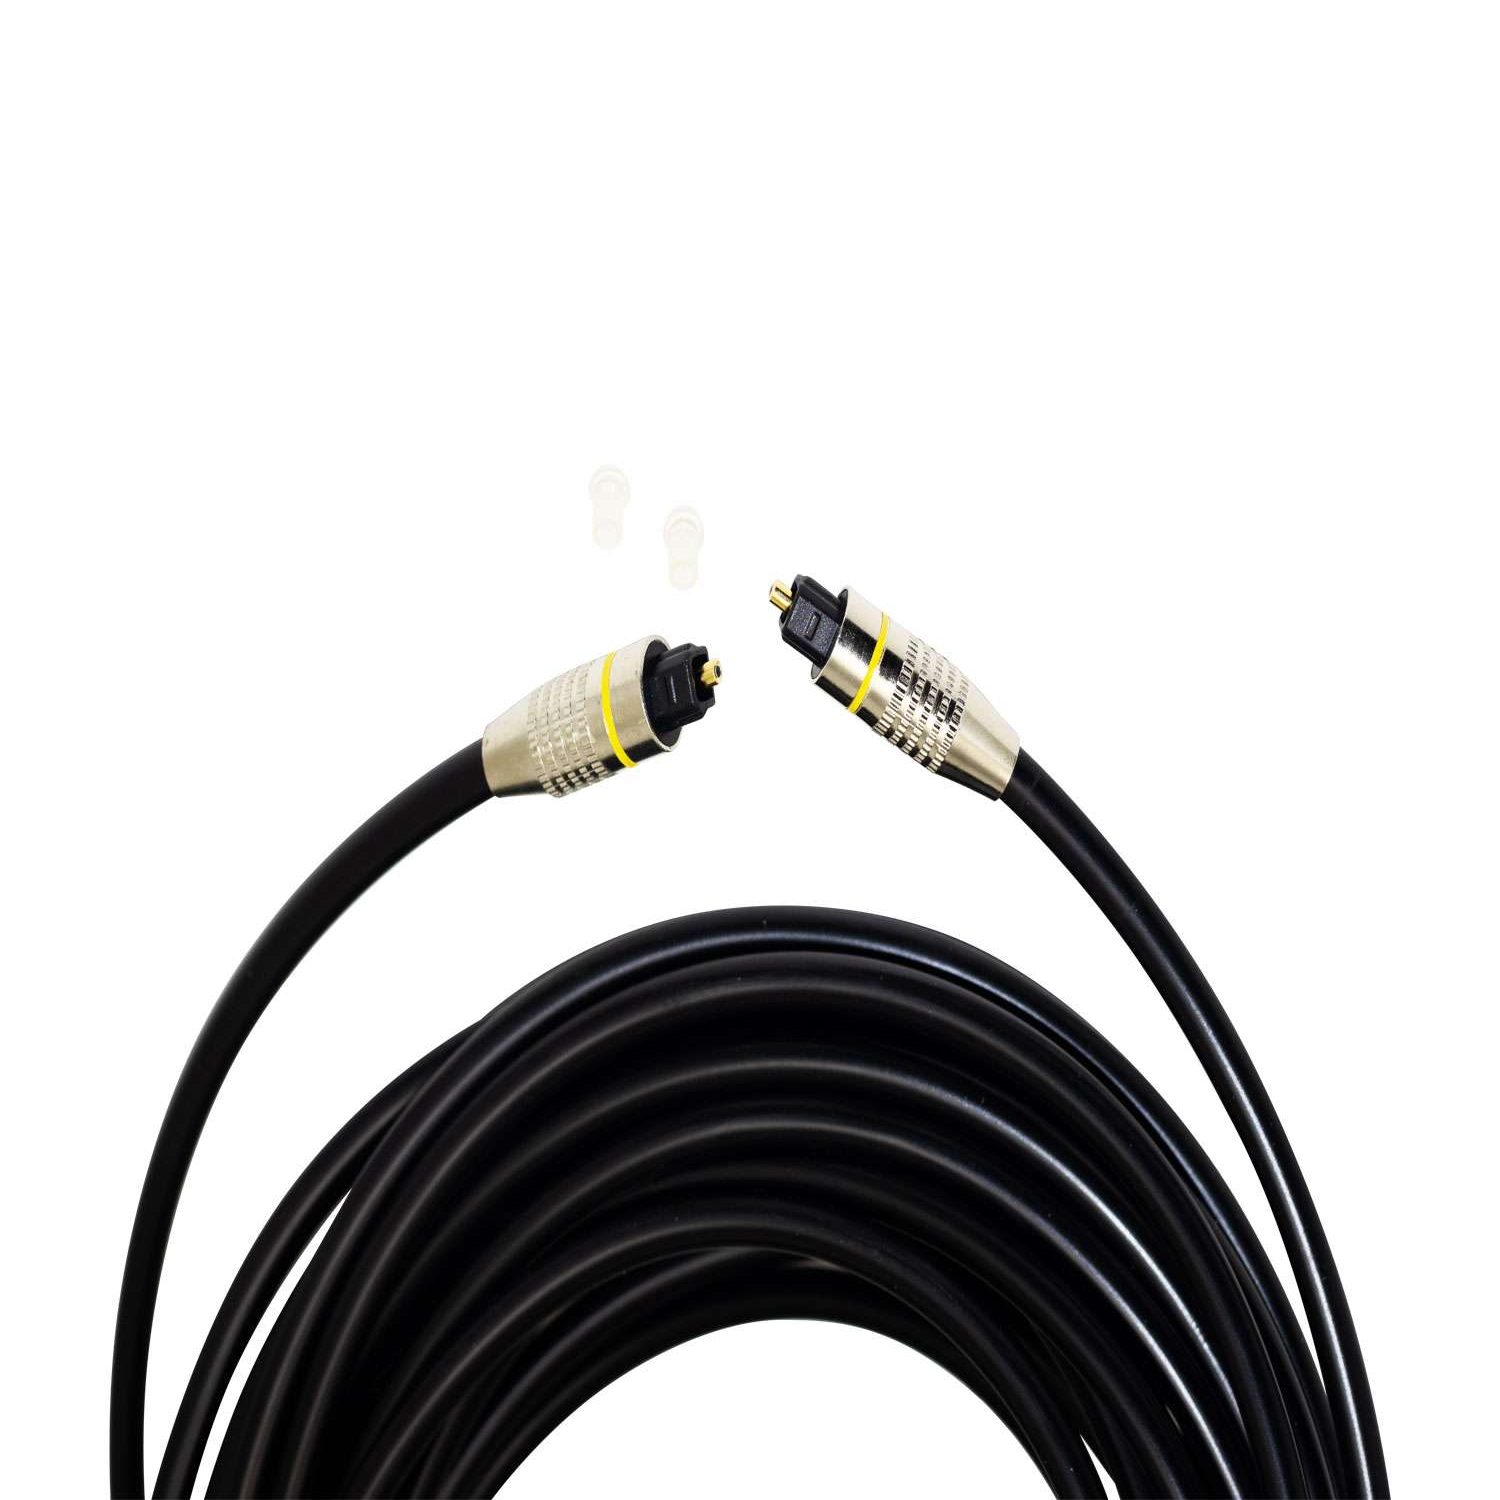 Cable Óptico para Audio Digital 10 Metros MK6.0-A-10M EMK 